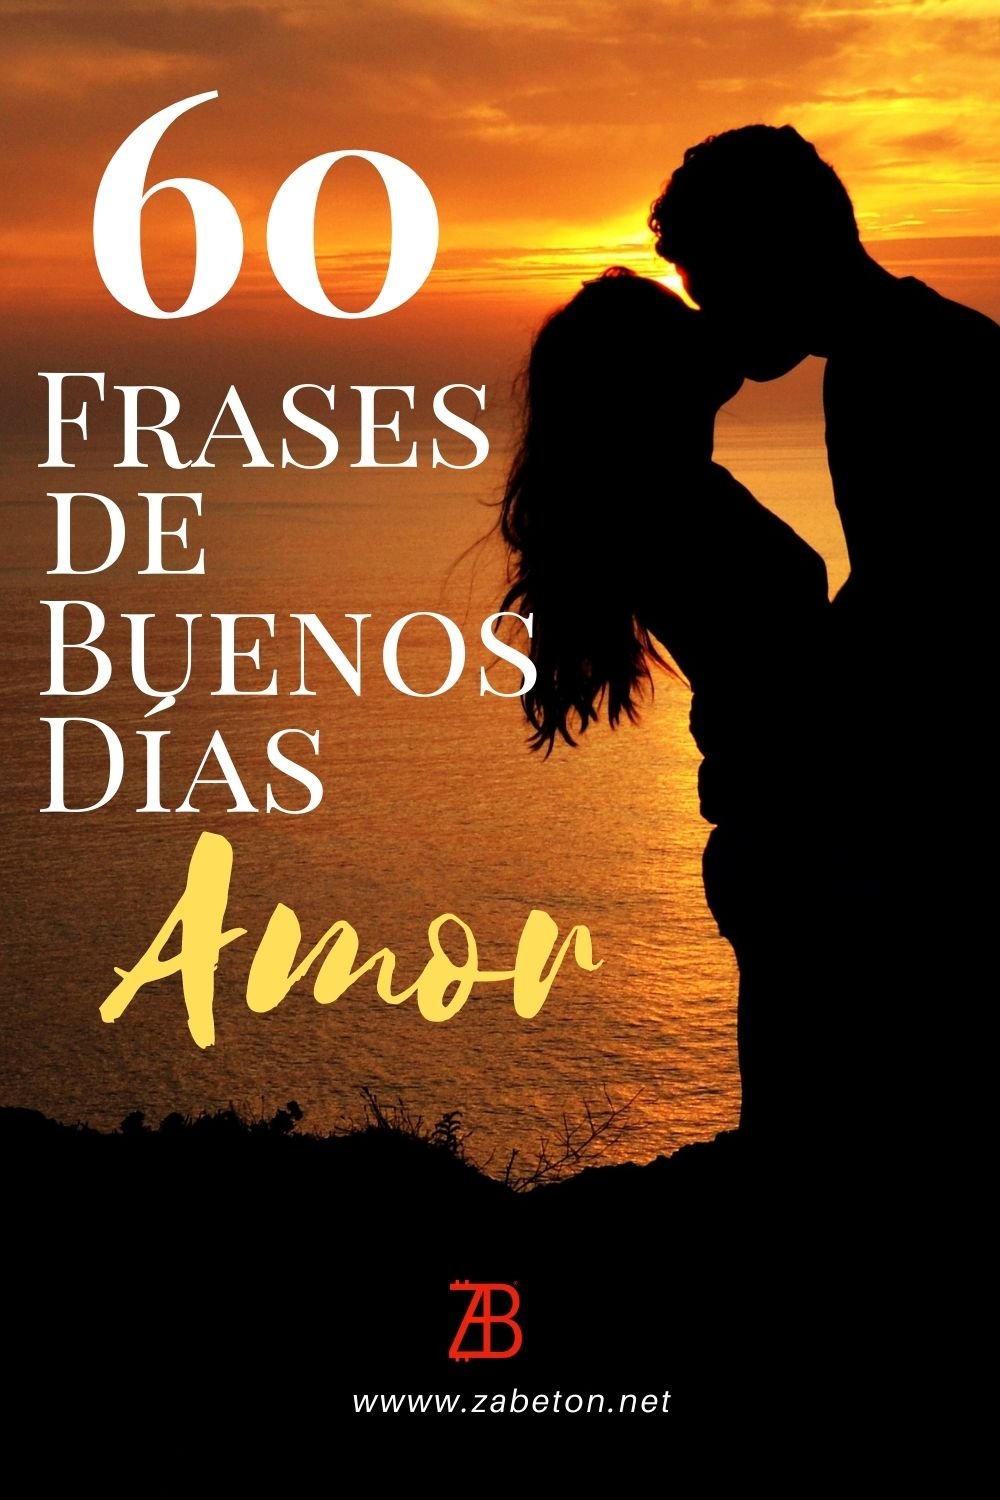 60 Frases de Buenos Días Para Mi Amor - zabeton.net